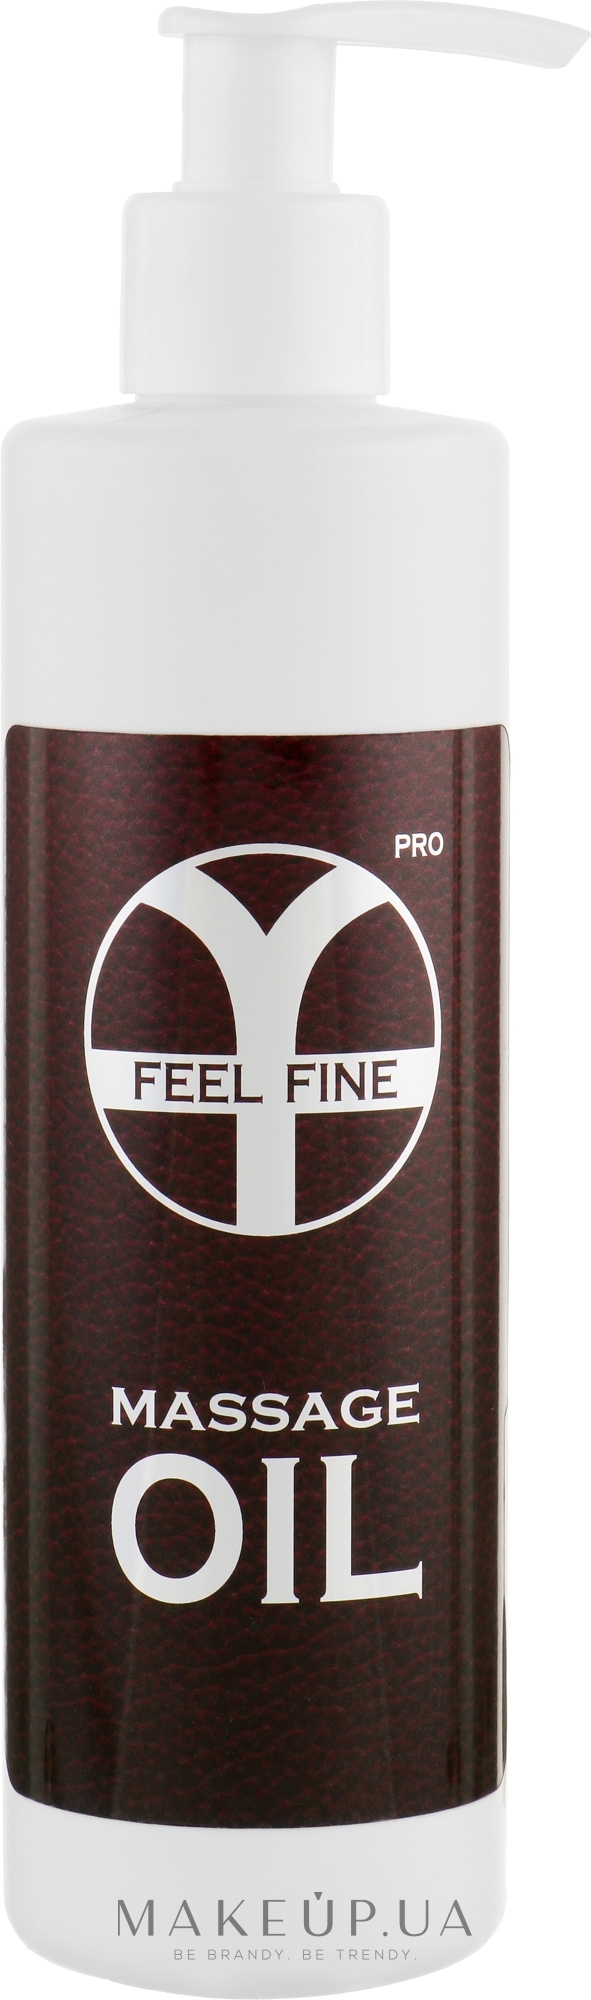 Олія для професійного масажу - Feel Fine Pro Massage Oil — фото 250ml